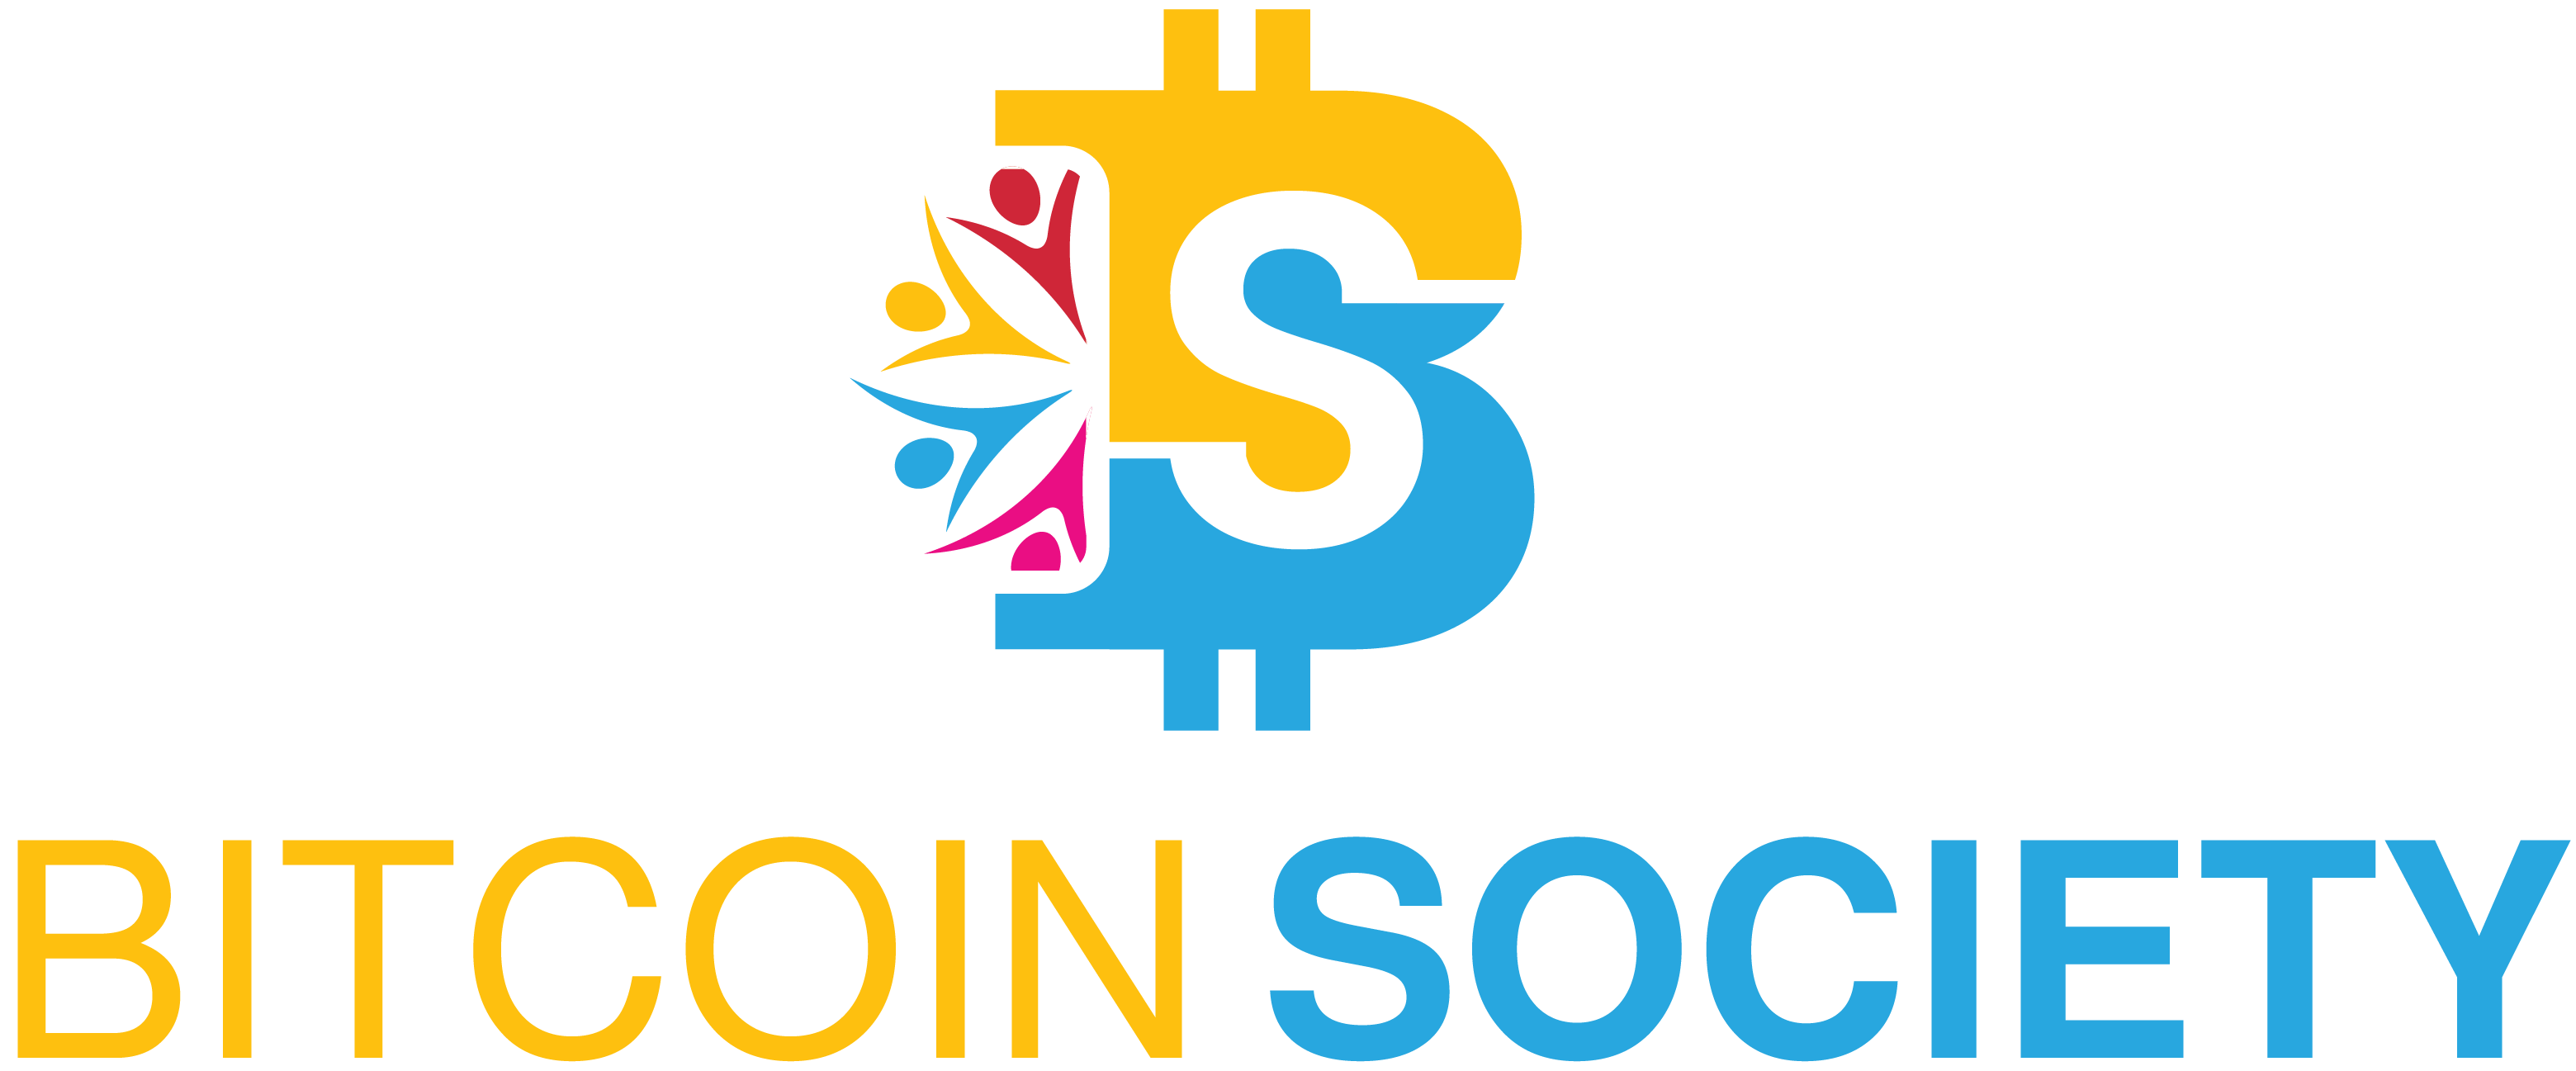 Bitcoin Society - Bitcoin Society 팀